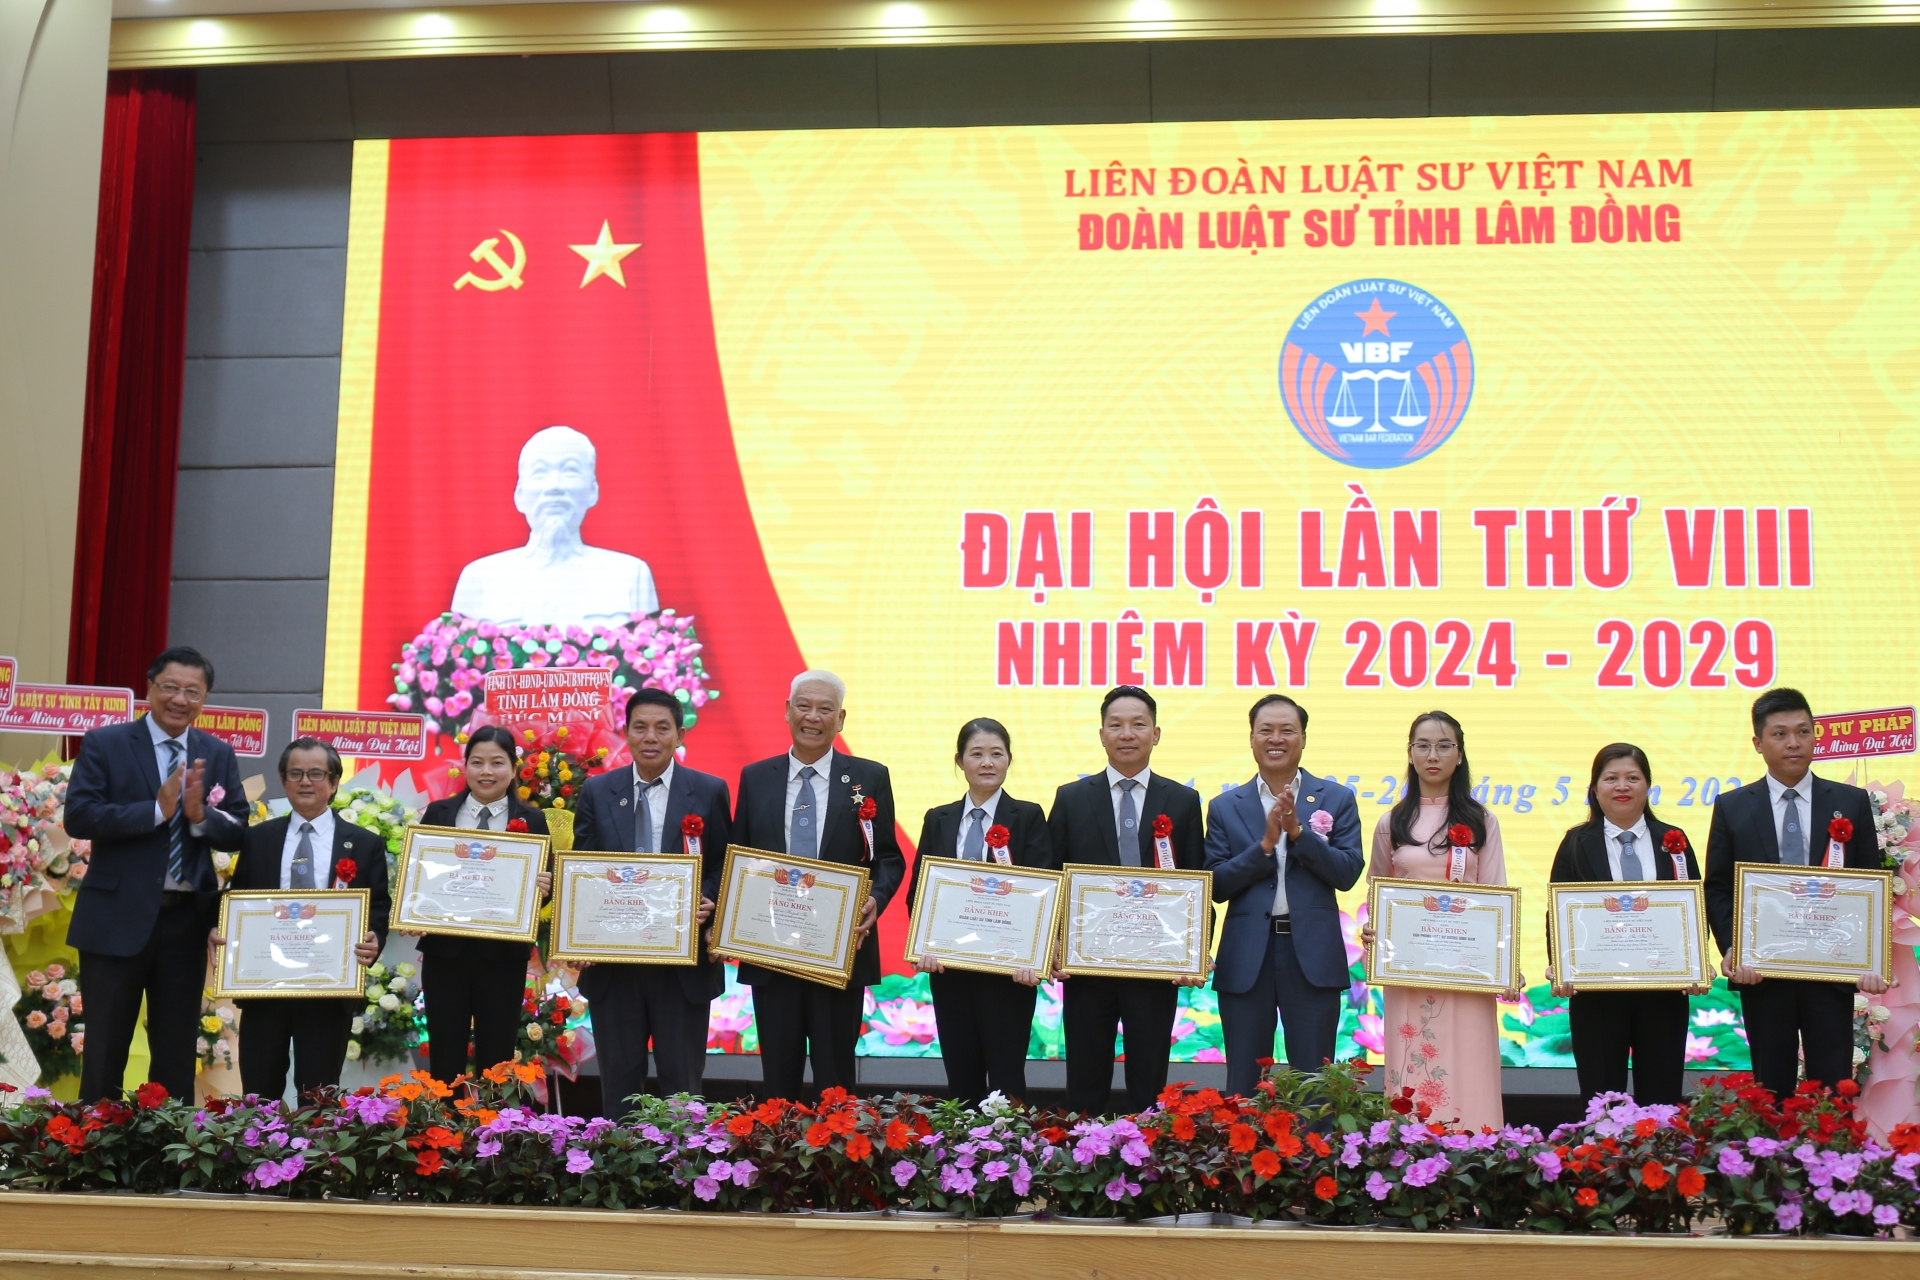 Liên đoàn Luật sư Việt Nam đã trao tặng Kỷ niệm chương “Vì sự nghiệp phát triển luật sư Việt Nam” cho 6 cá nhân thuộc Đoàn Luật sư tỉnh, tặng bằng khen cho 3 tập thể và 8 cá nhân